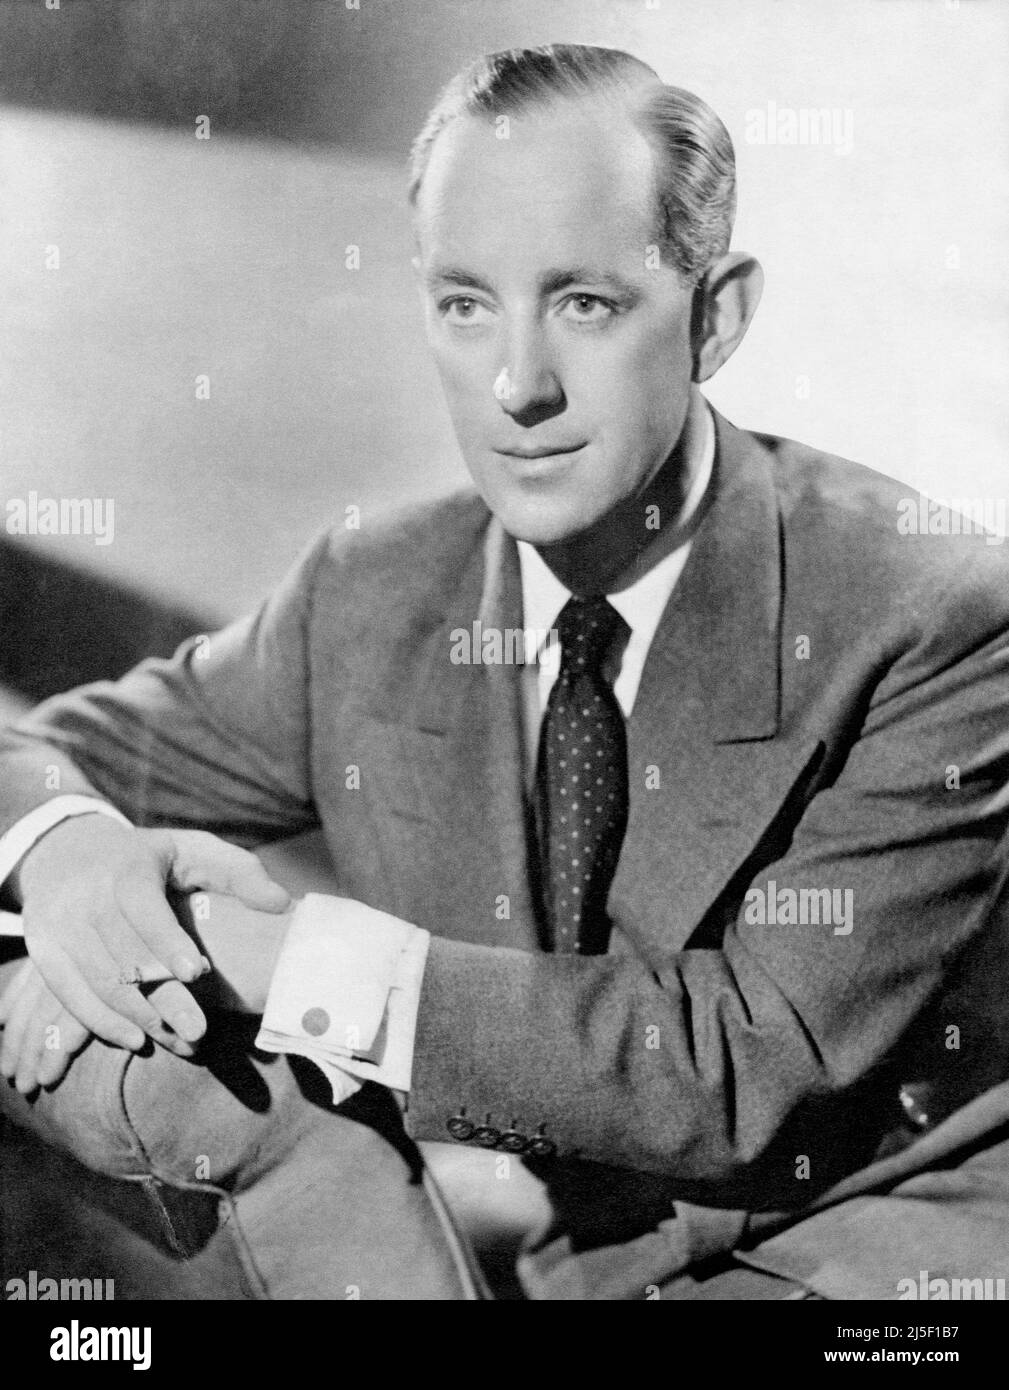 1951 Werbefoto des Schauspielers und Filmstars Alec Guinness. Stockfoto